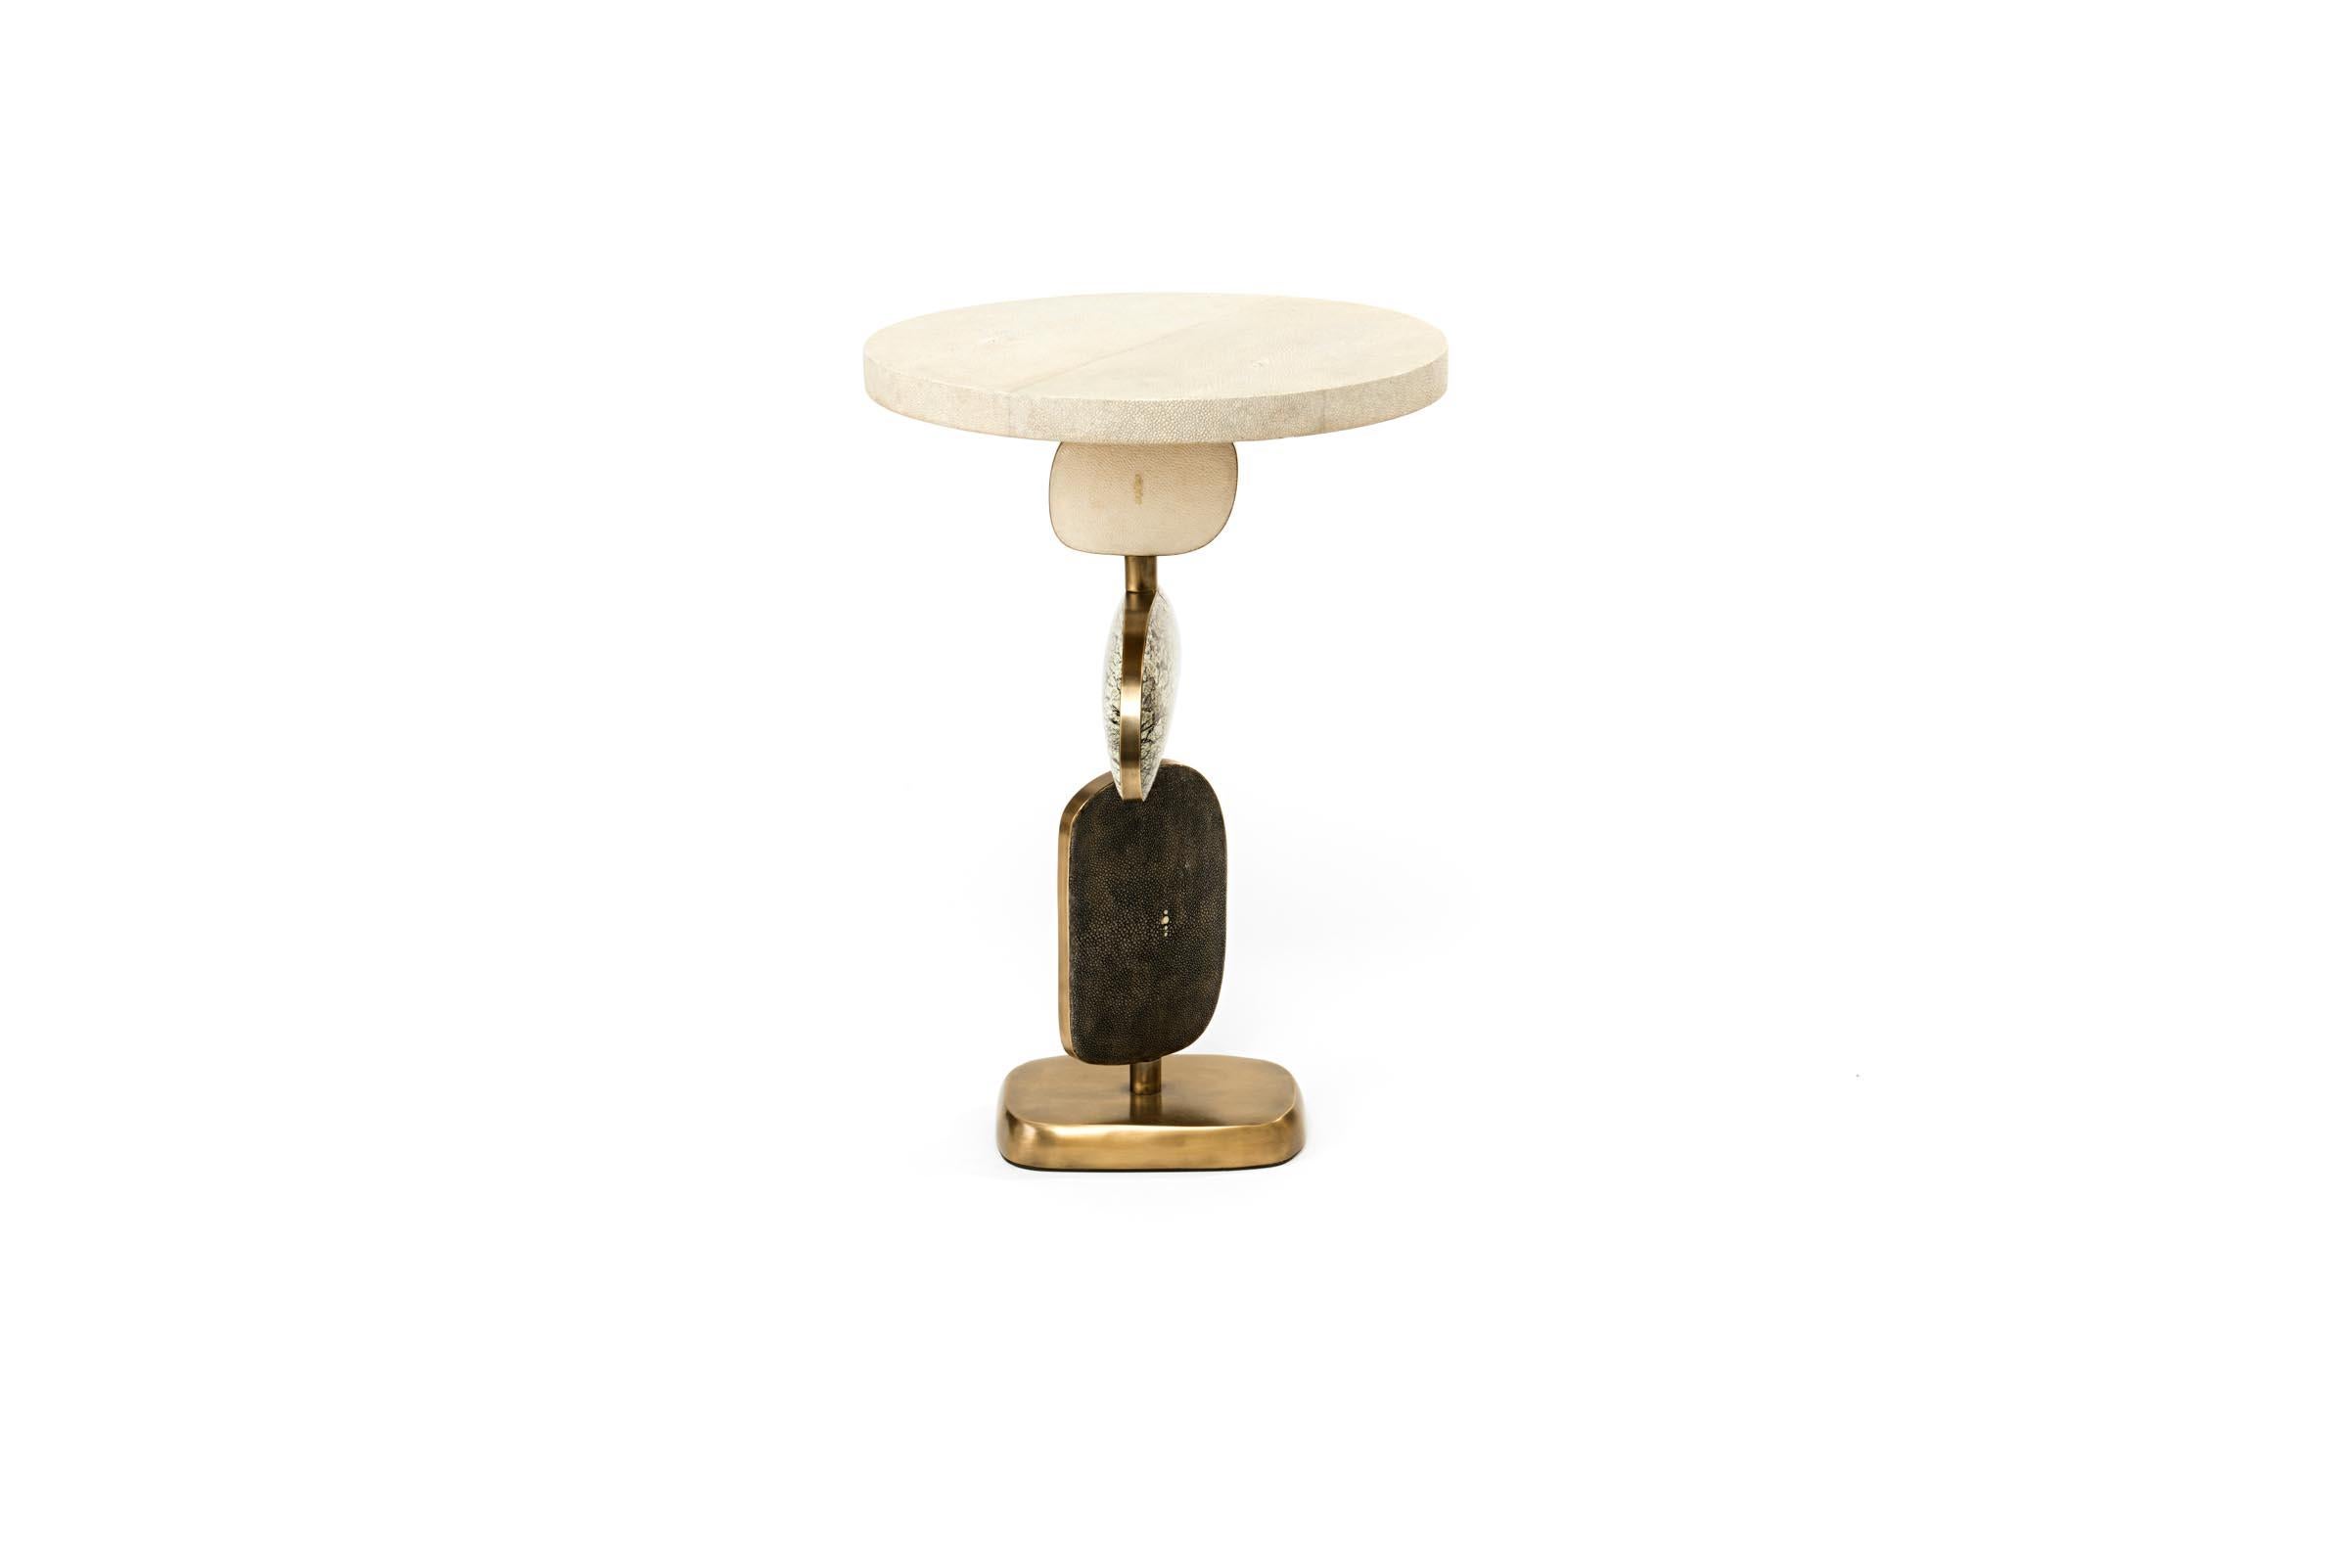 La table d'appoint Cosmo de Kifu Paris est une pièce fantaisiste et sculpturale, incrustée de galuchat crème/galuchat noir réversible, de pierre de Baguio, de coquille de stylo noire et de laiton bronze-patina. Les formes amorphes de la partie